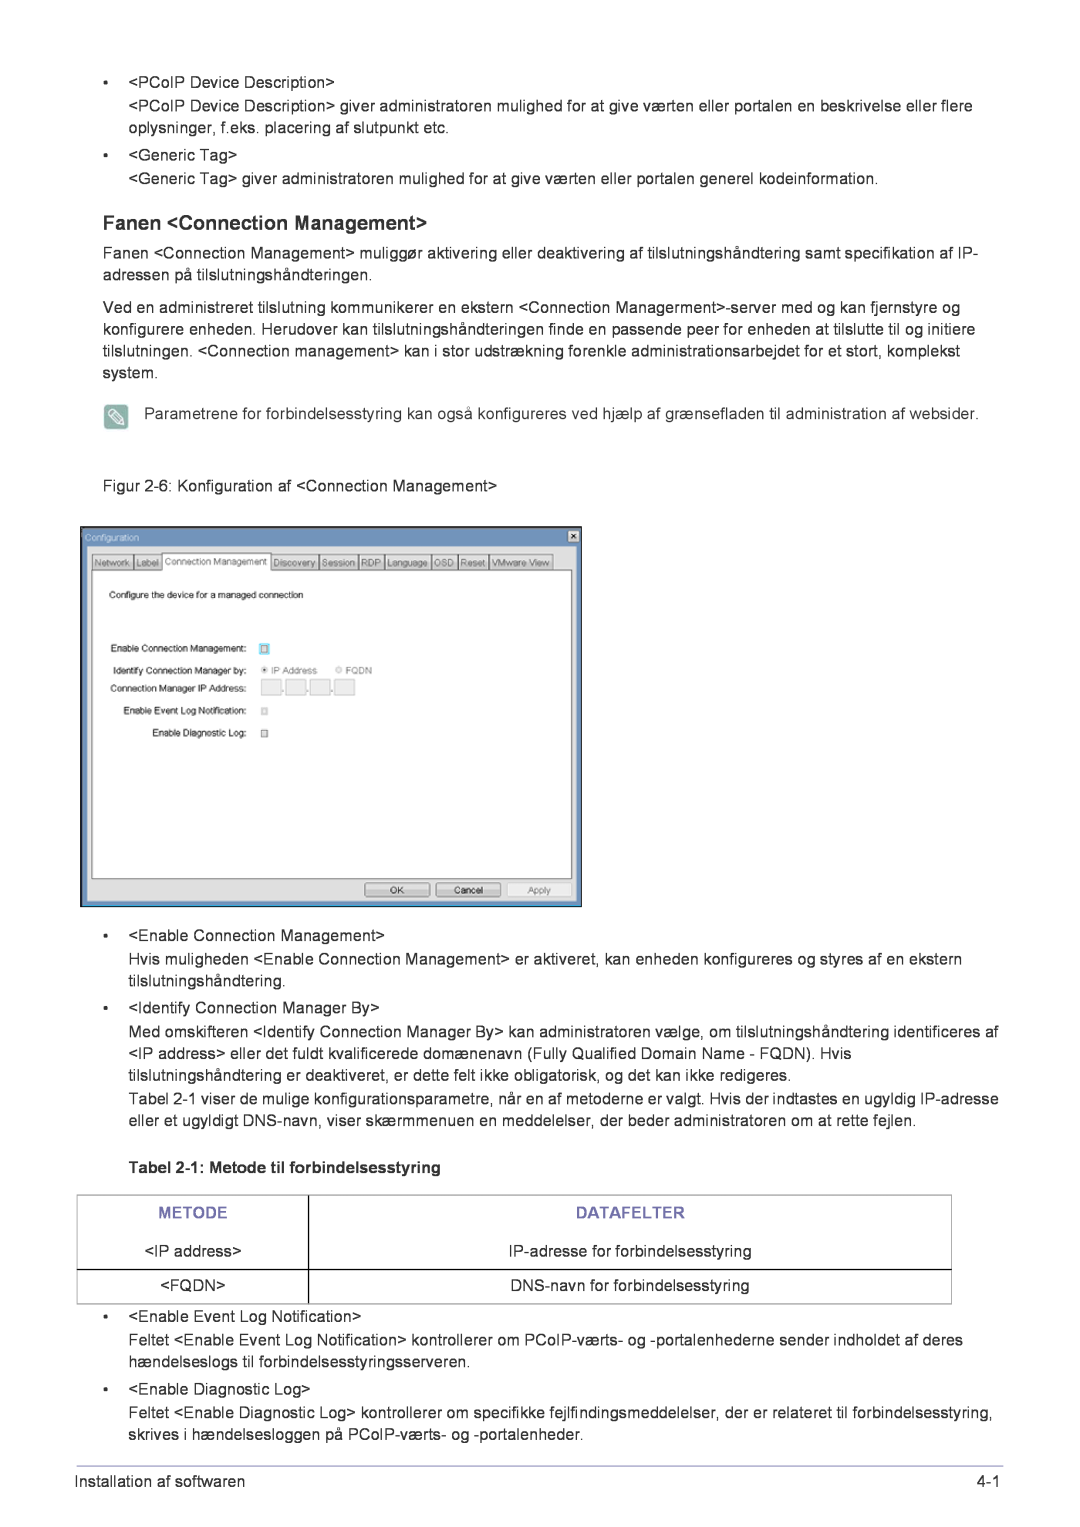 Samsung LF22NPBHBNP/EN manual Fanen Connection Management, Tabel 2-1 Metode til forbindelsesstyring, Datafelter 